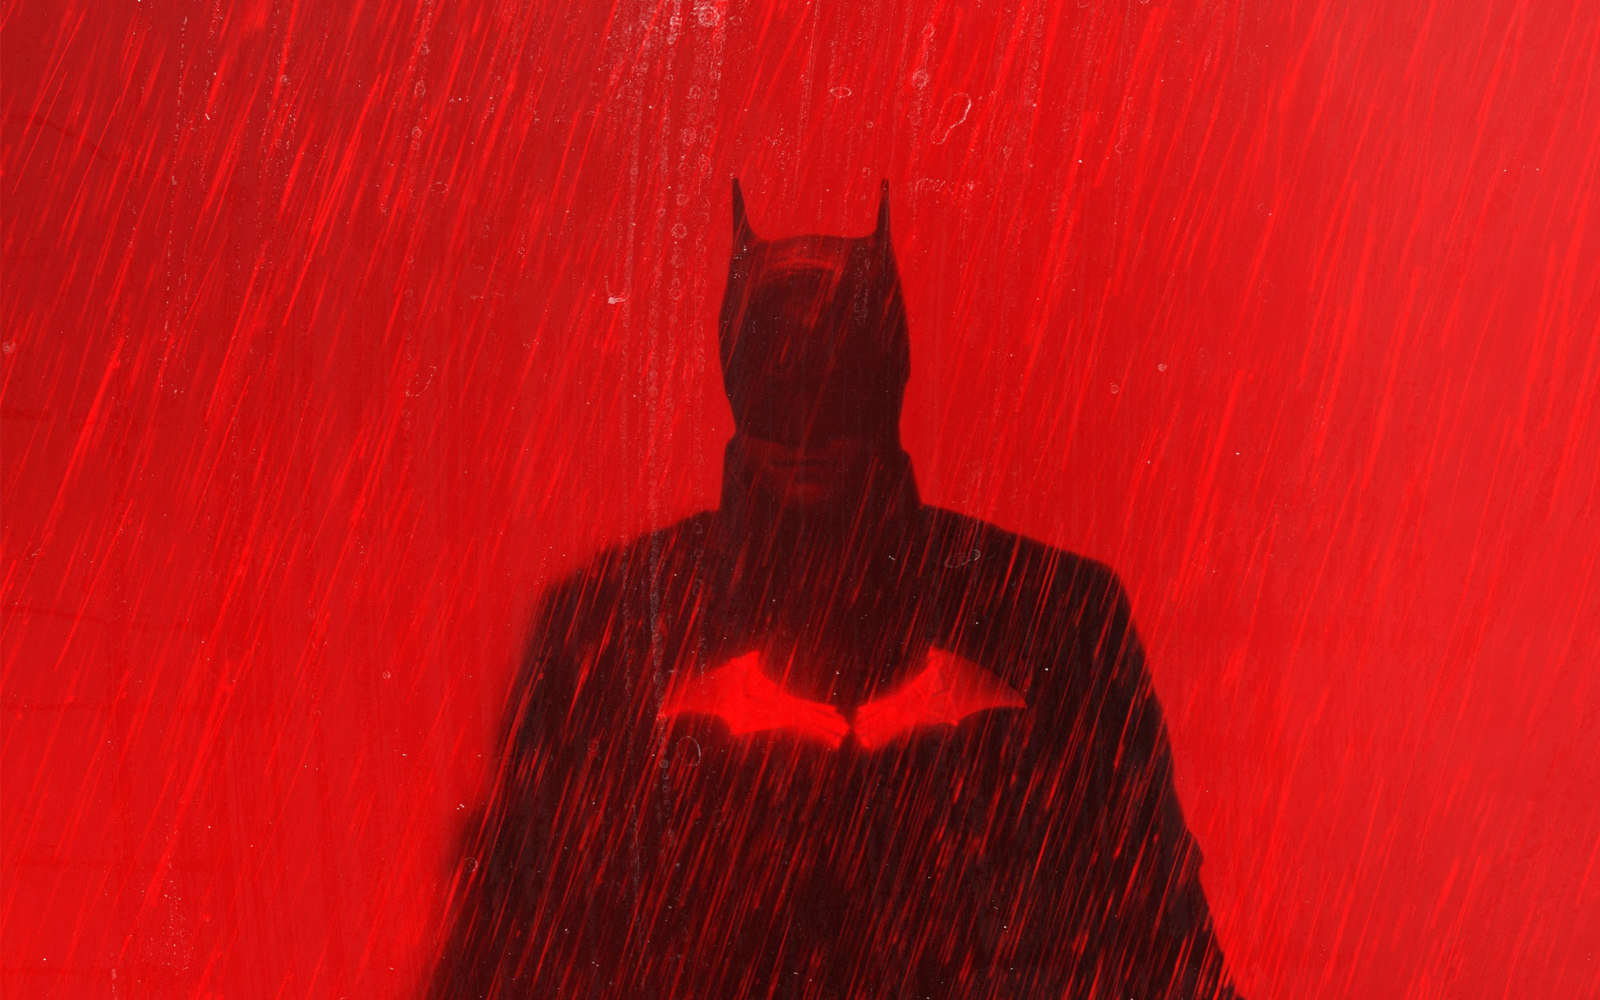 新版《蝙蝠侠》正式确定将于3月18日登录内地院线